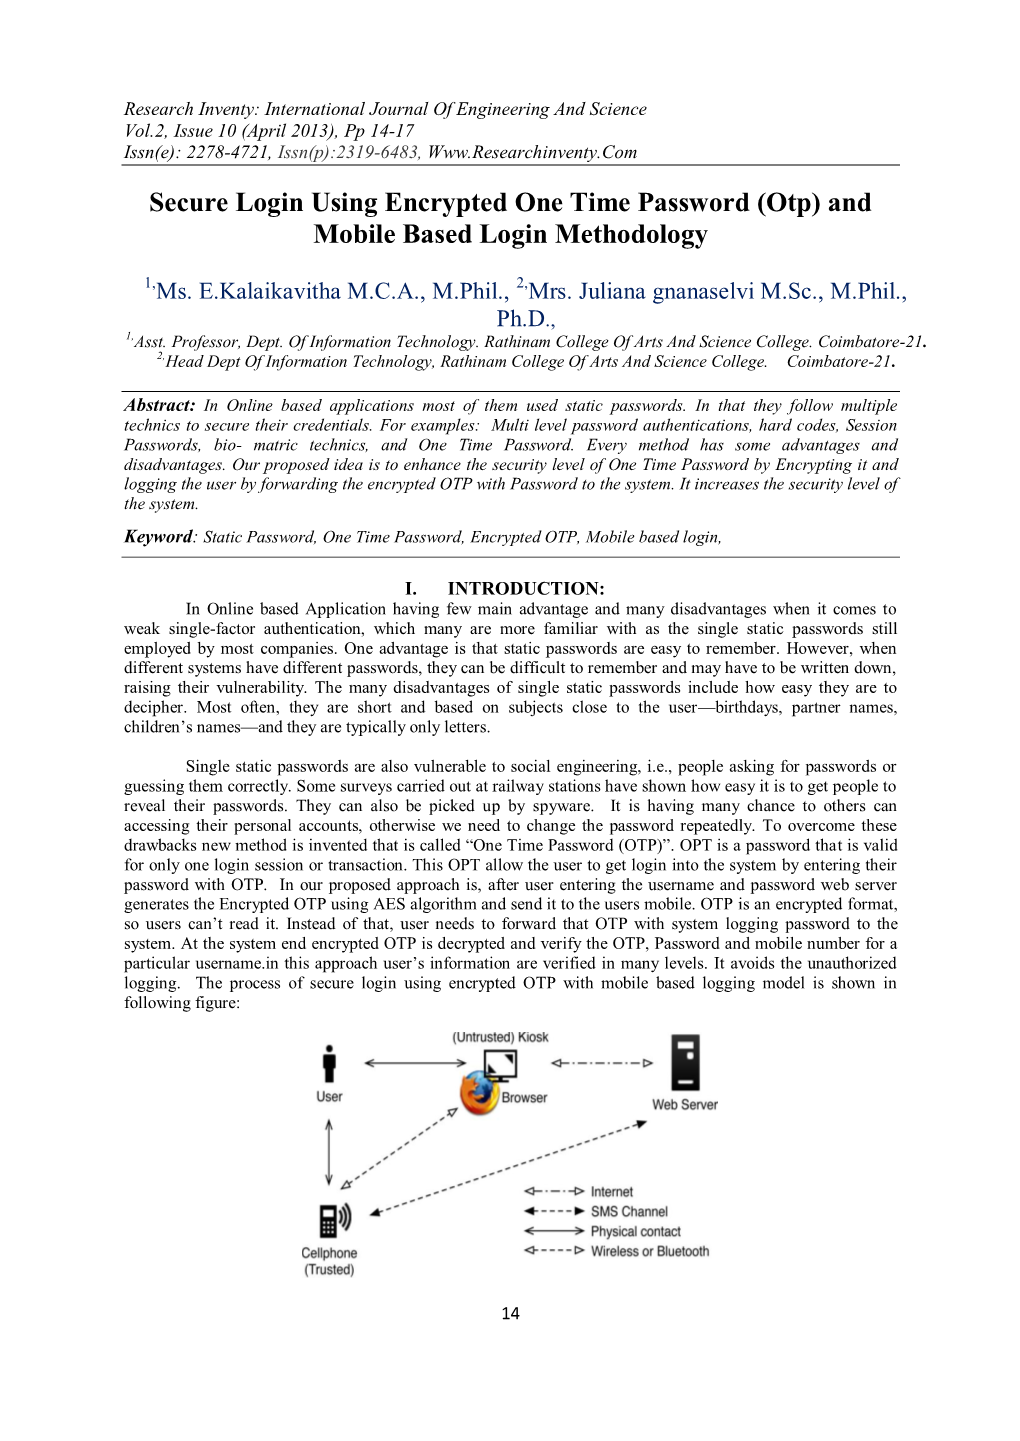 Otp) and Mobile Based Login Methodology